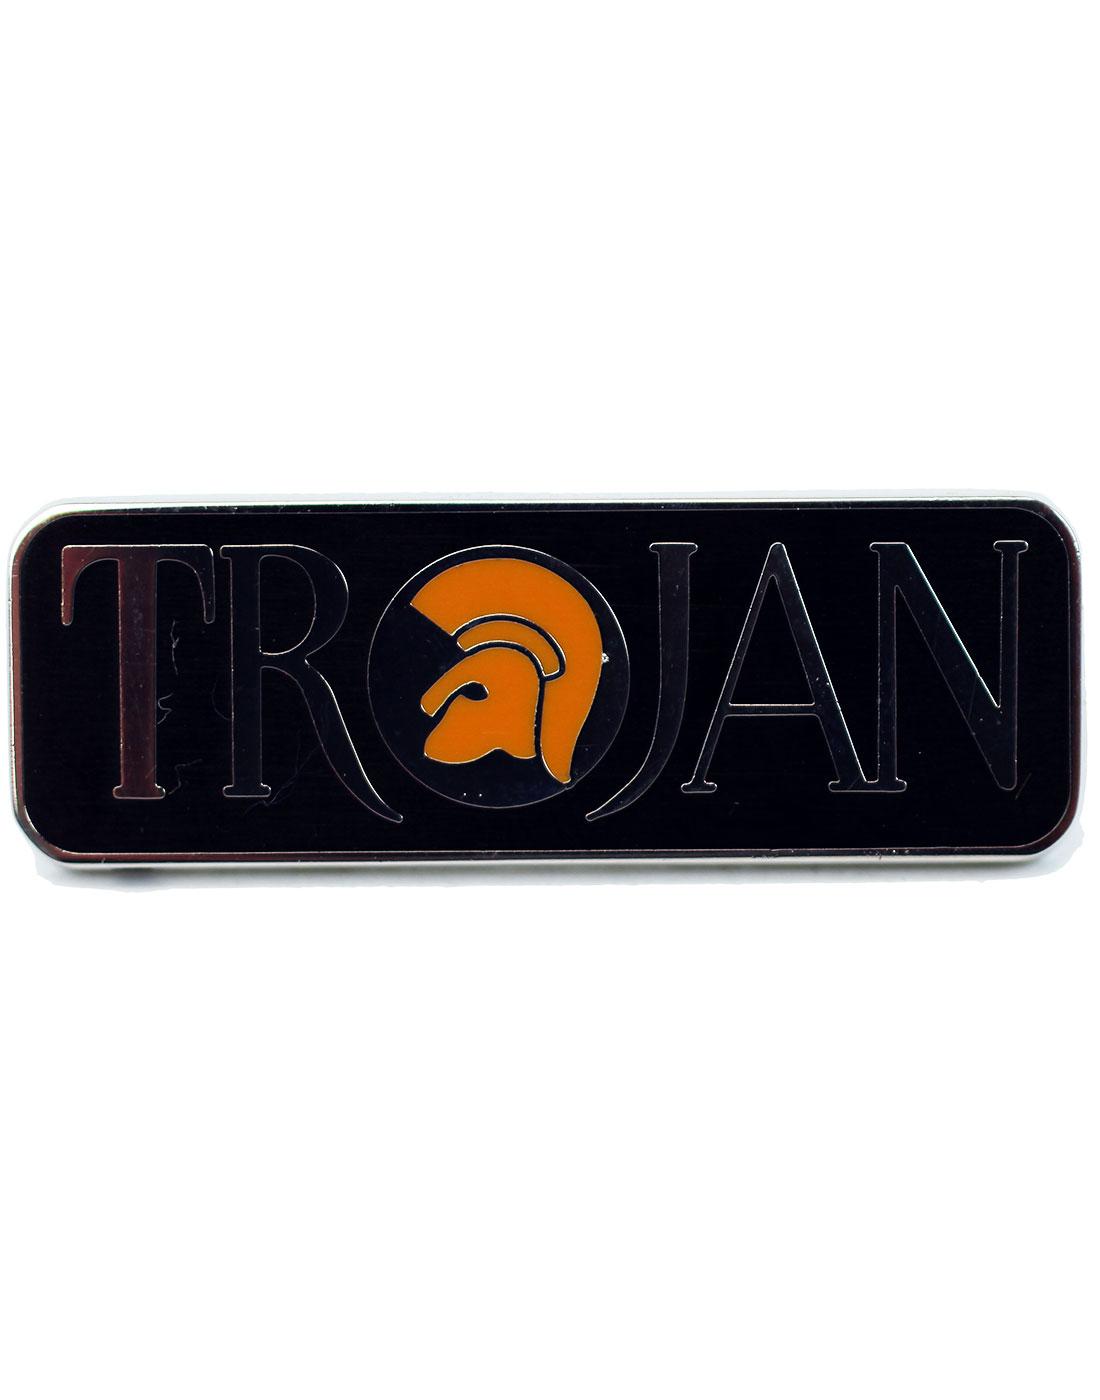 TROJAN RECORDS Ska Mod Helmet Logo Pin Badge